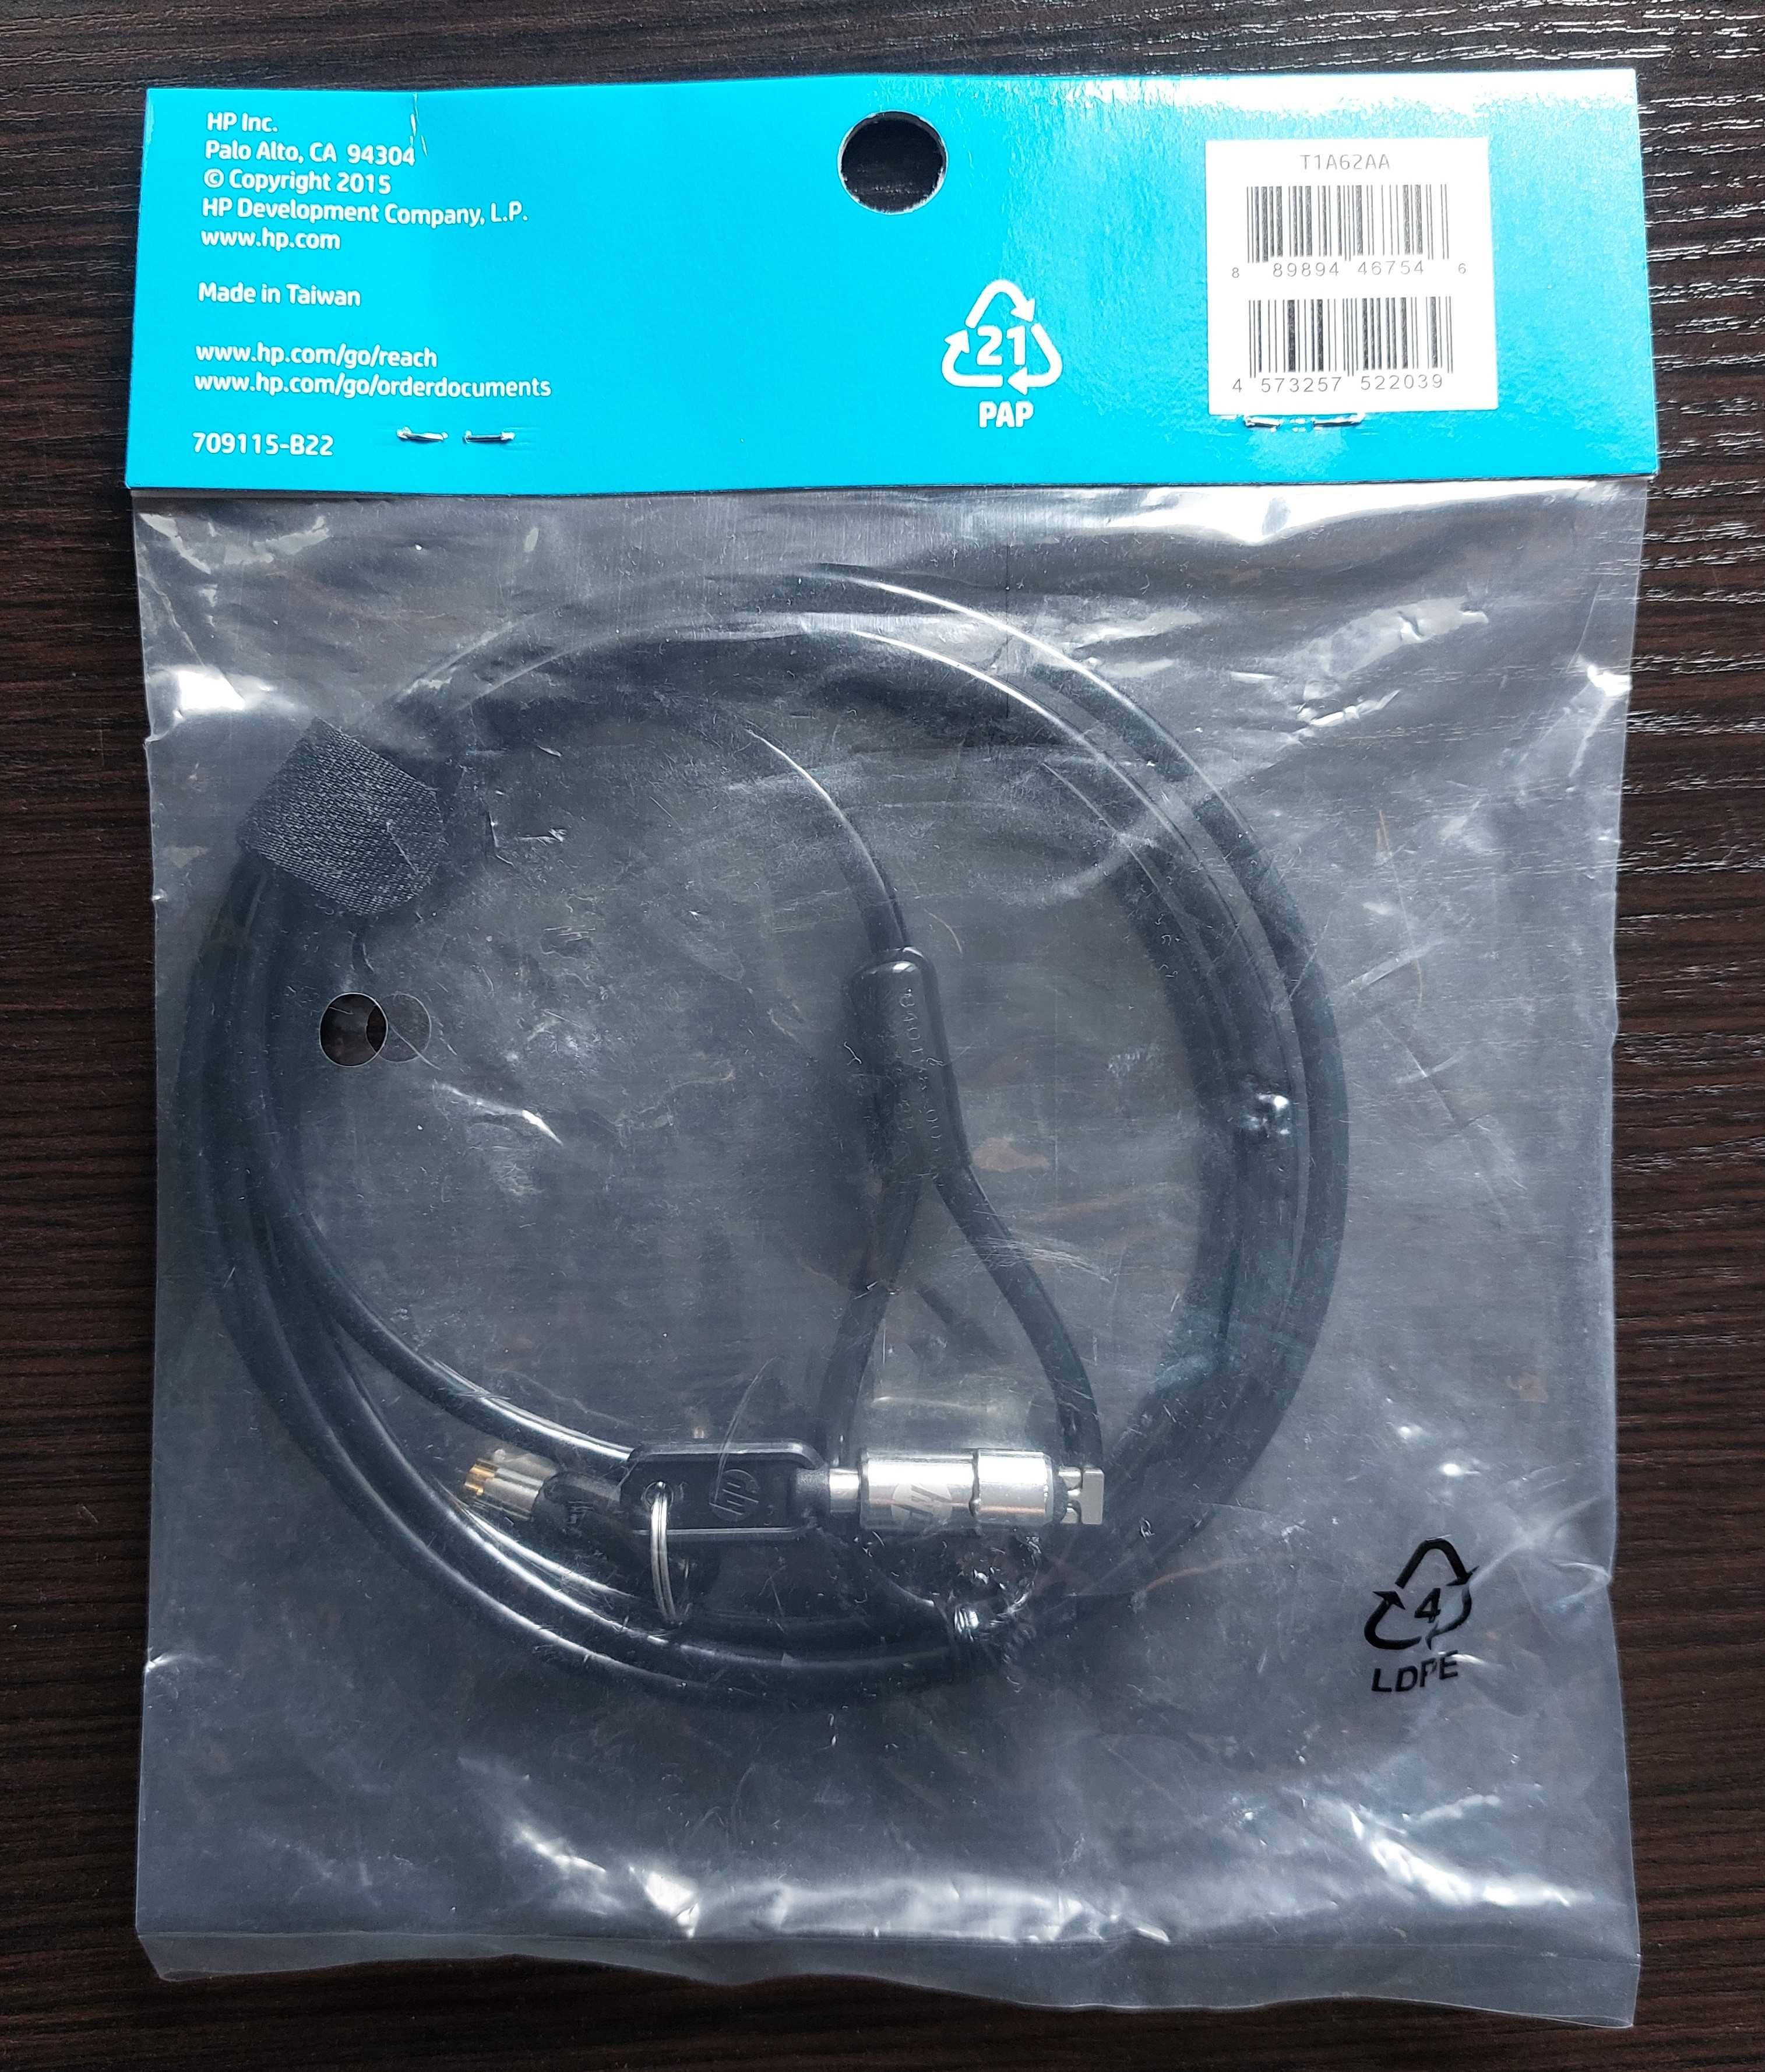 Nowa! Linka zabezpieczająca HP- Keyed Cable Lock 10mm